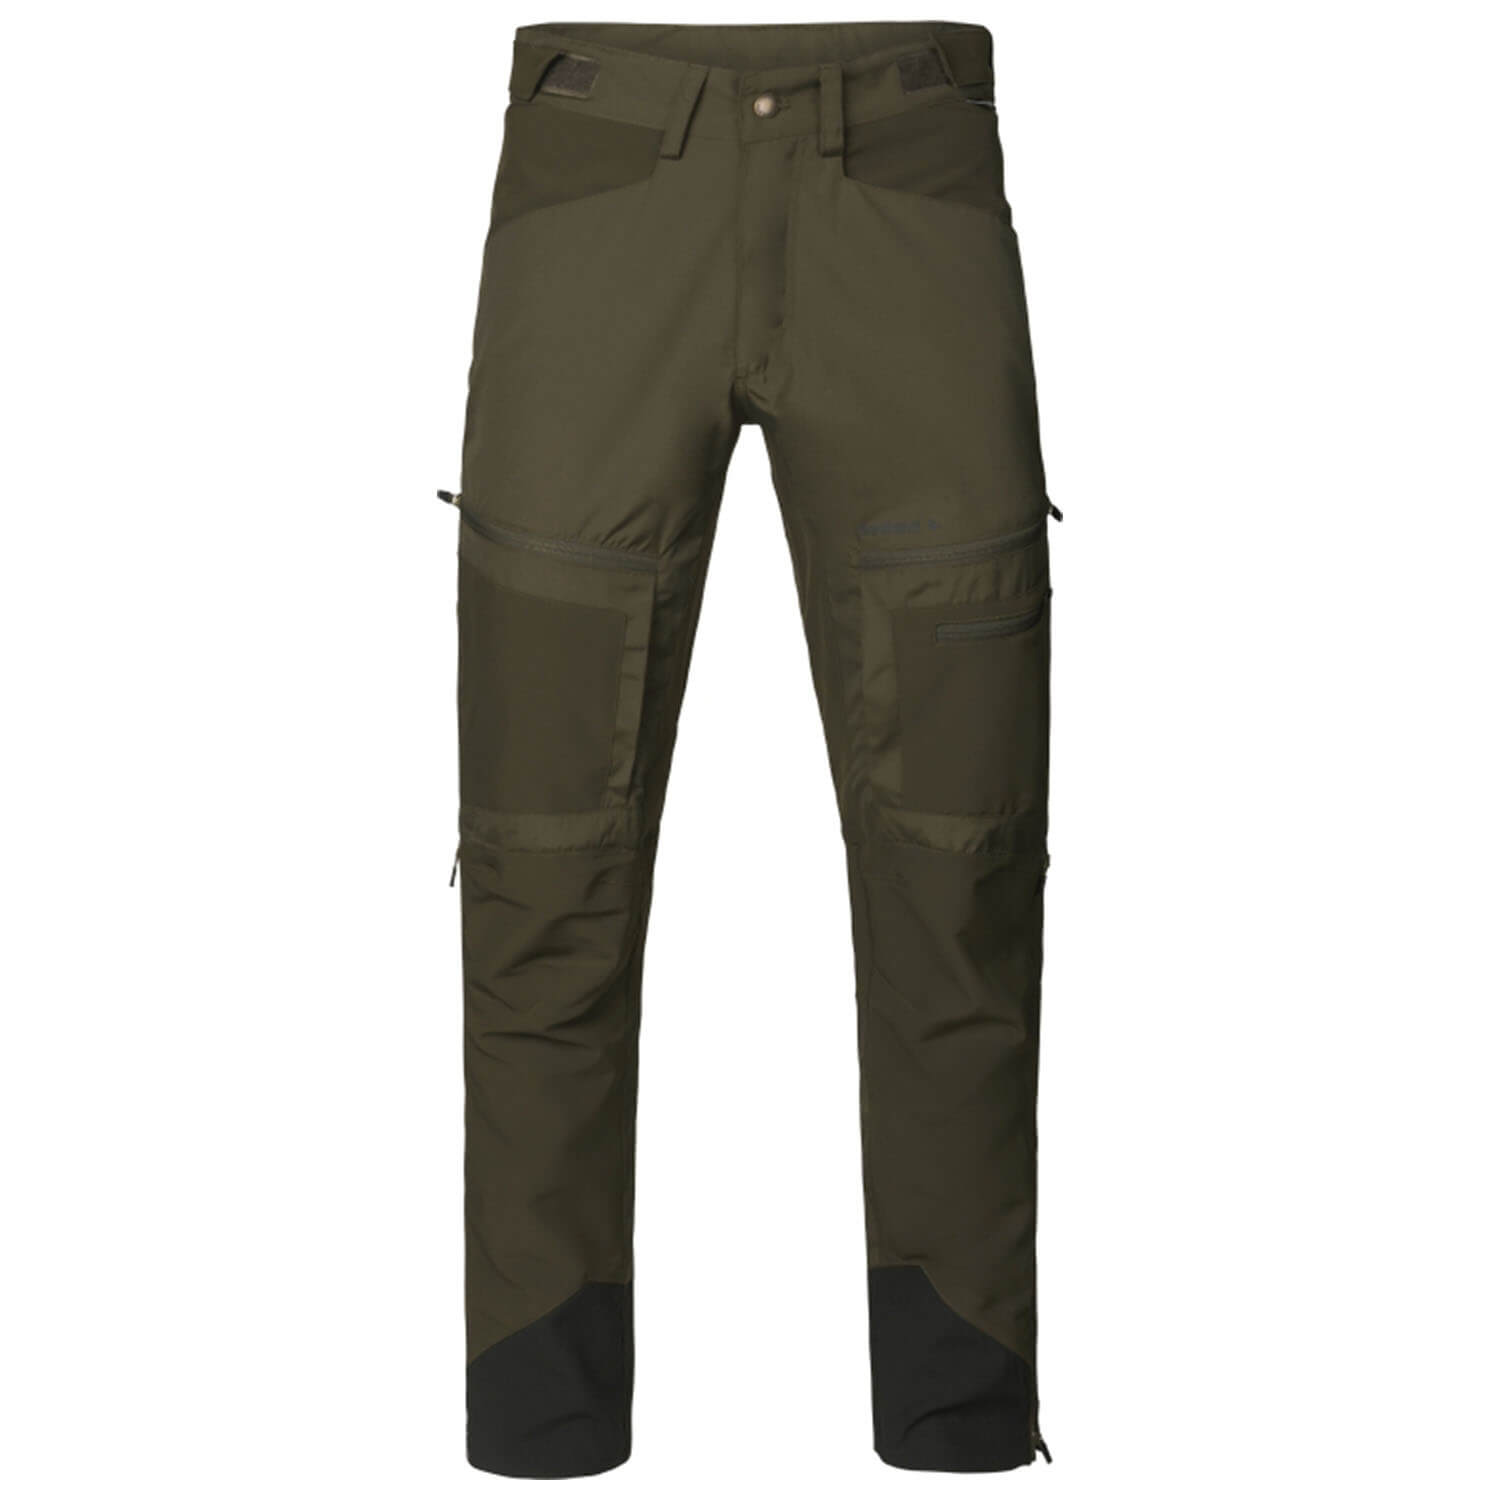 Seeland pants hemlock (Pine Green/Grizzly Brown) -  Roe Buck Hunting